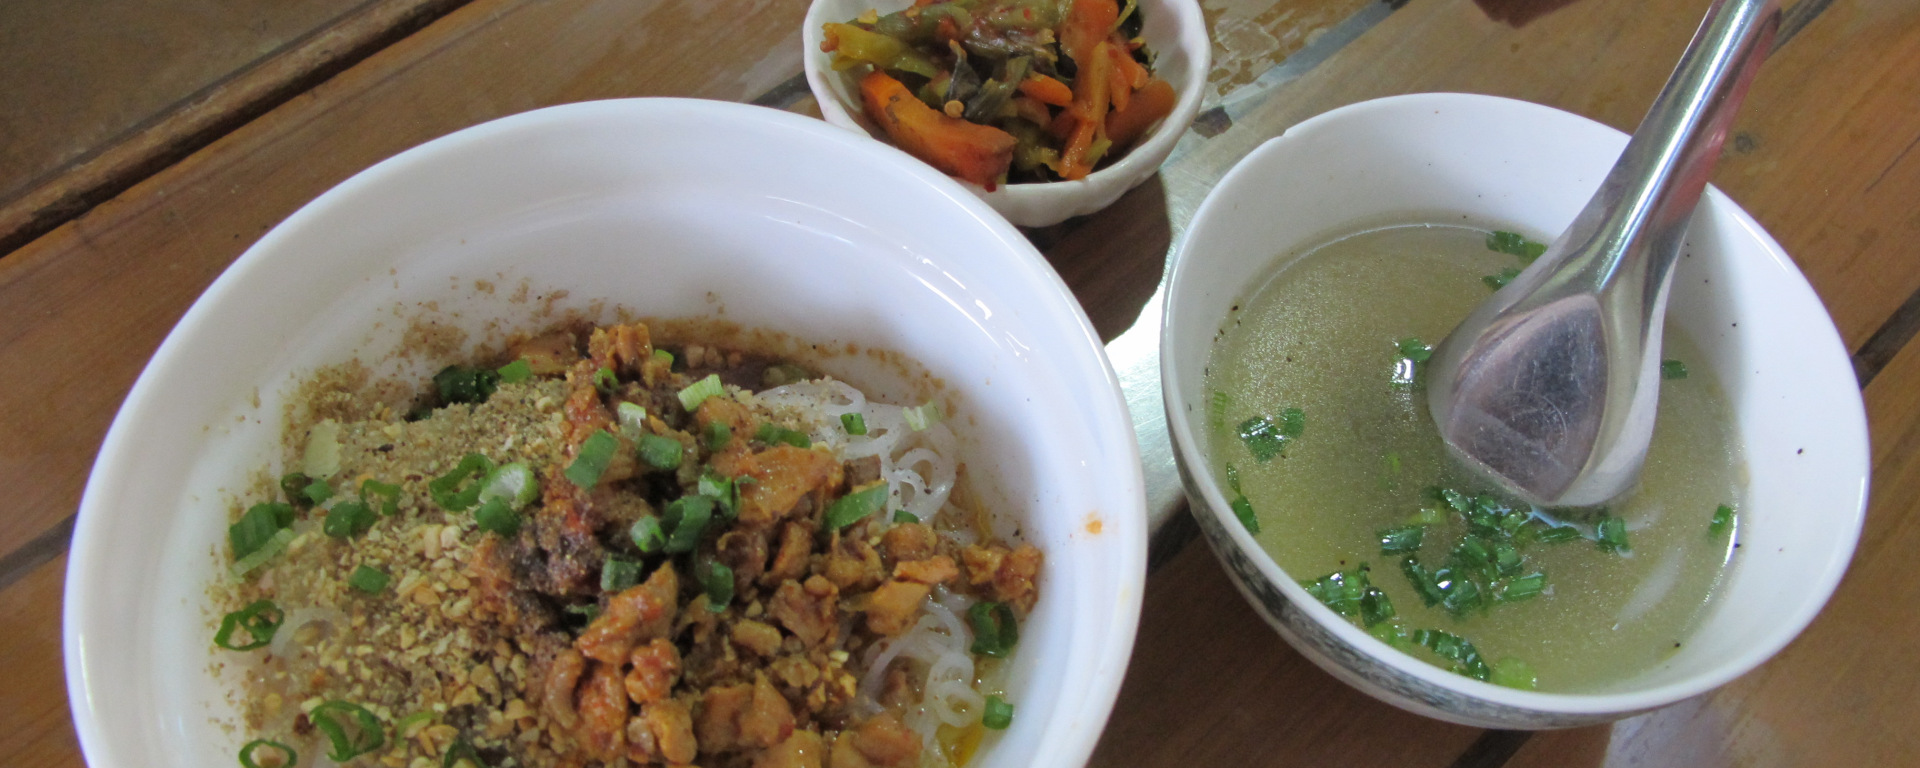 Les nouilles Shan sont souvent servies avec une tasse de soupe.